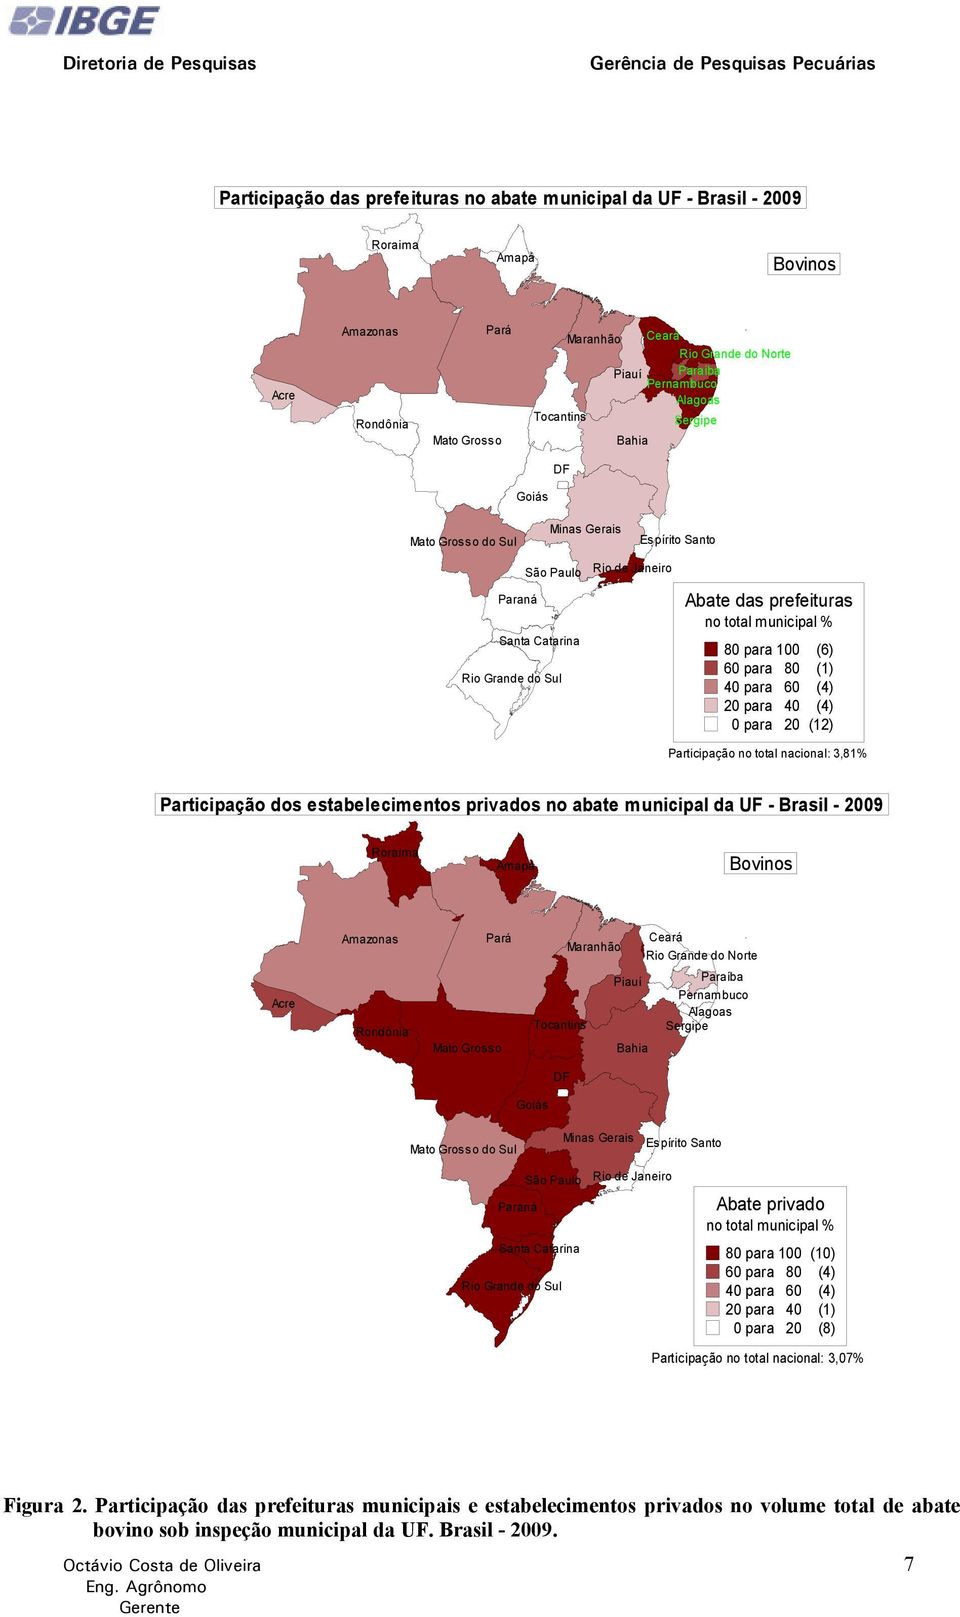 (6) 60 para 80 (1) 40 para 60 (4) 20 para 40 (4) 0 para 20 (12) Participação no total nacional: 3,81% Participação dos estabelecimentos privados no abate municipal da UF - Brasil - 2009 Roraima Amapá